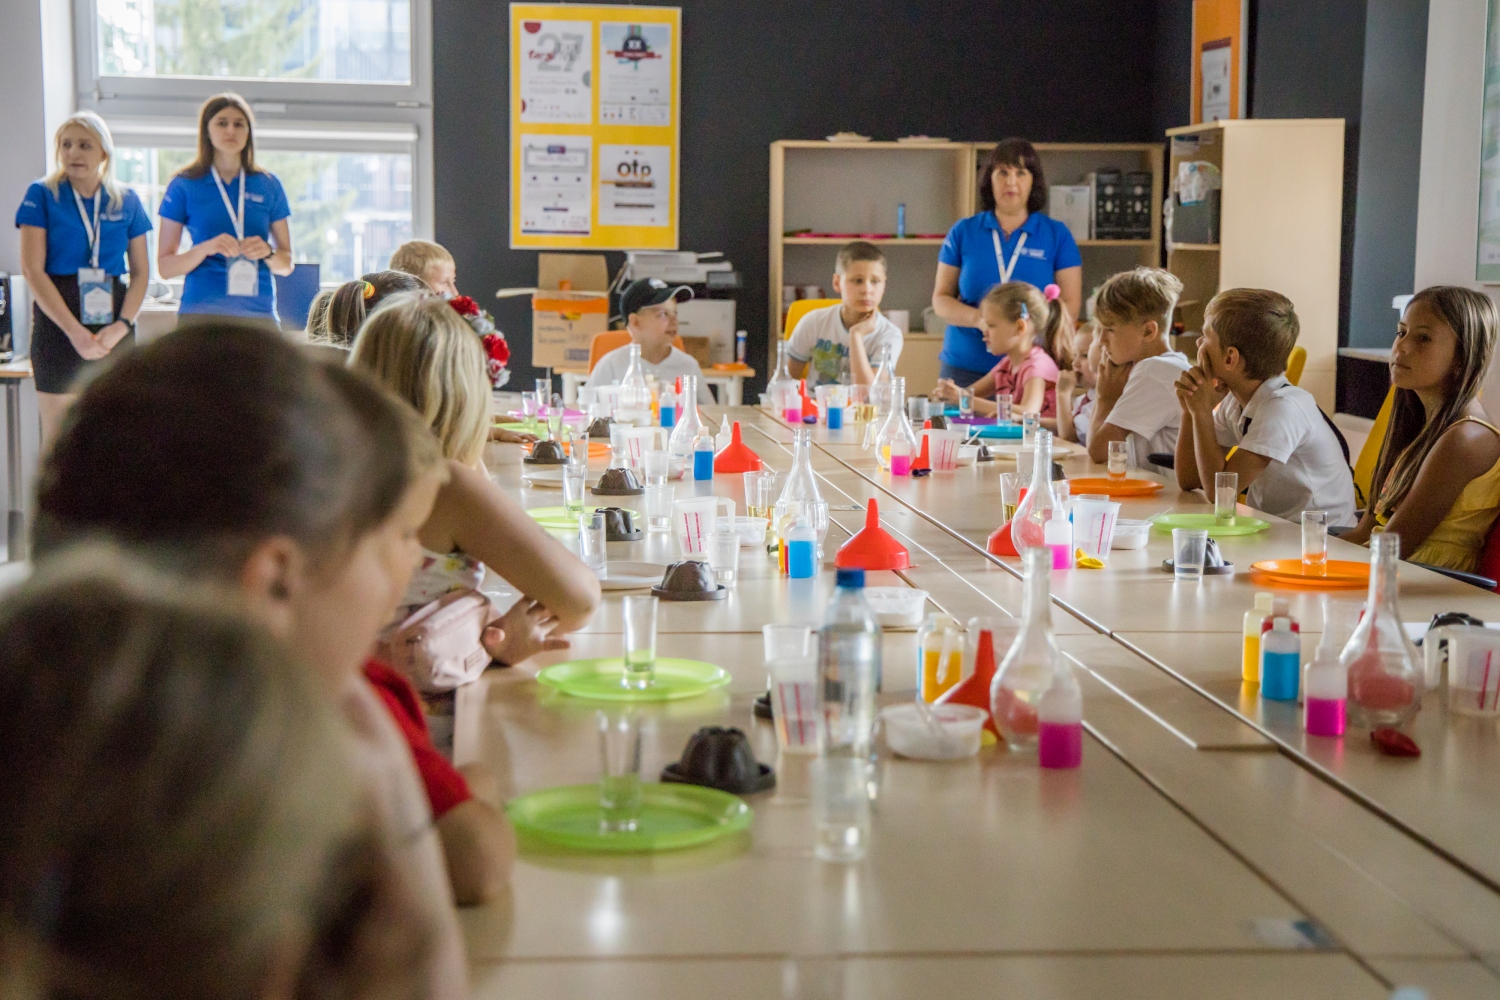 Енергетичний Центр Науки - майстер-класи через розваги та експерименти порадували дітей з України